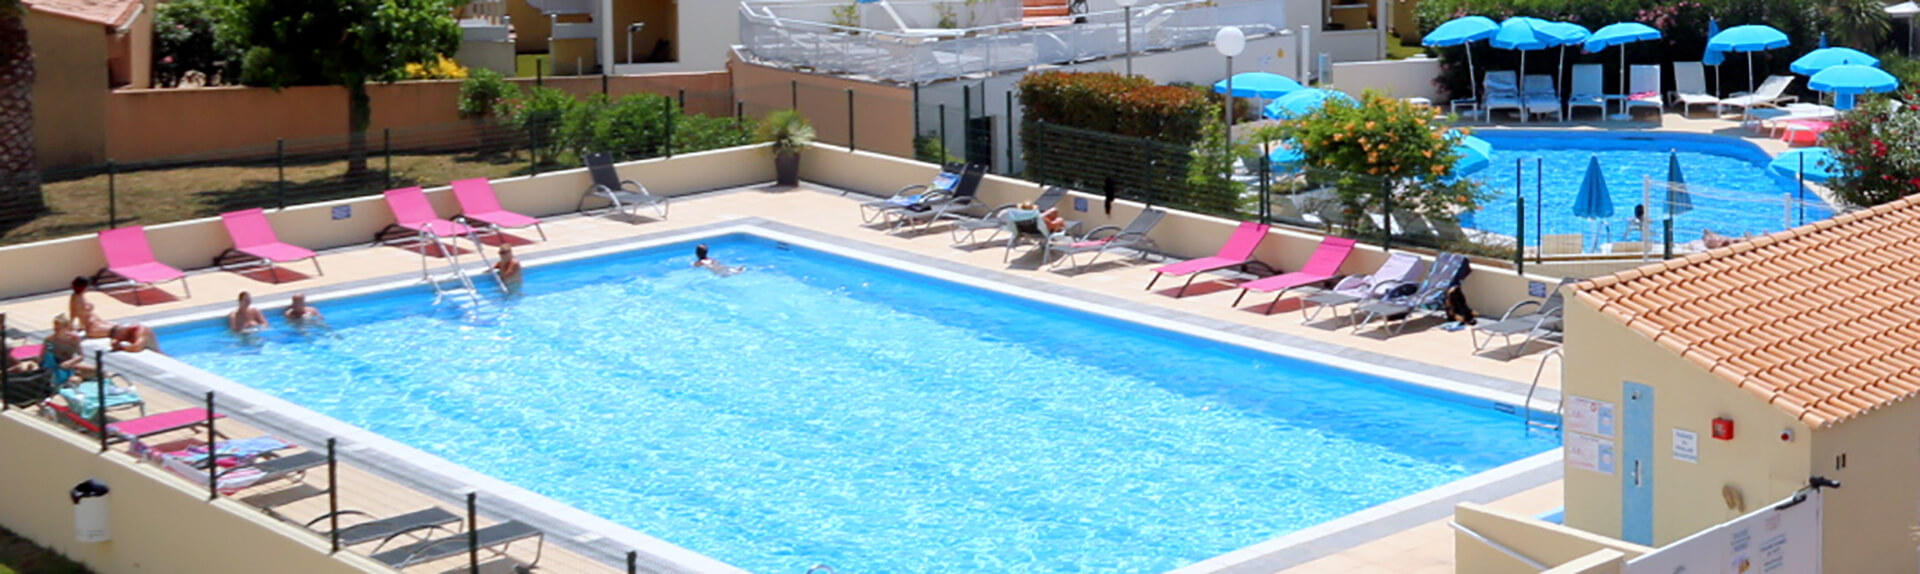 Résidence Port Soleil - Seite zum Pool des Hotel Eve: FKK-Vermietung in Cap d'Agde